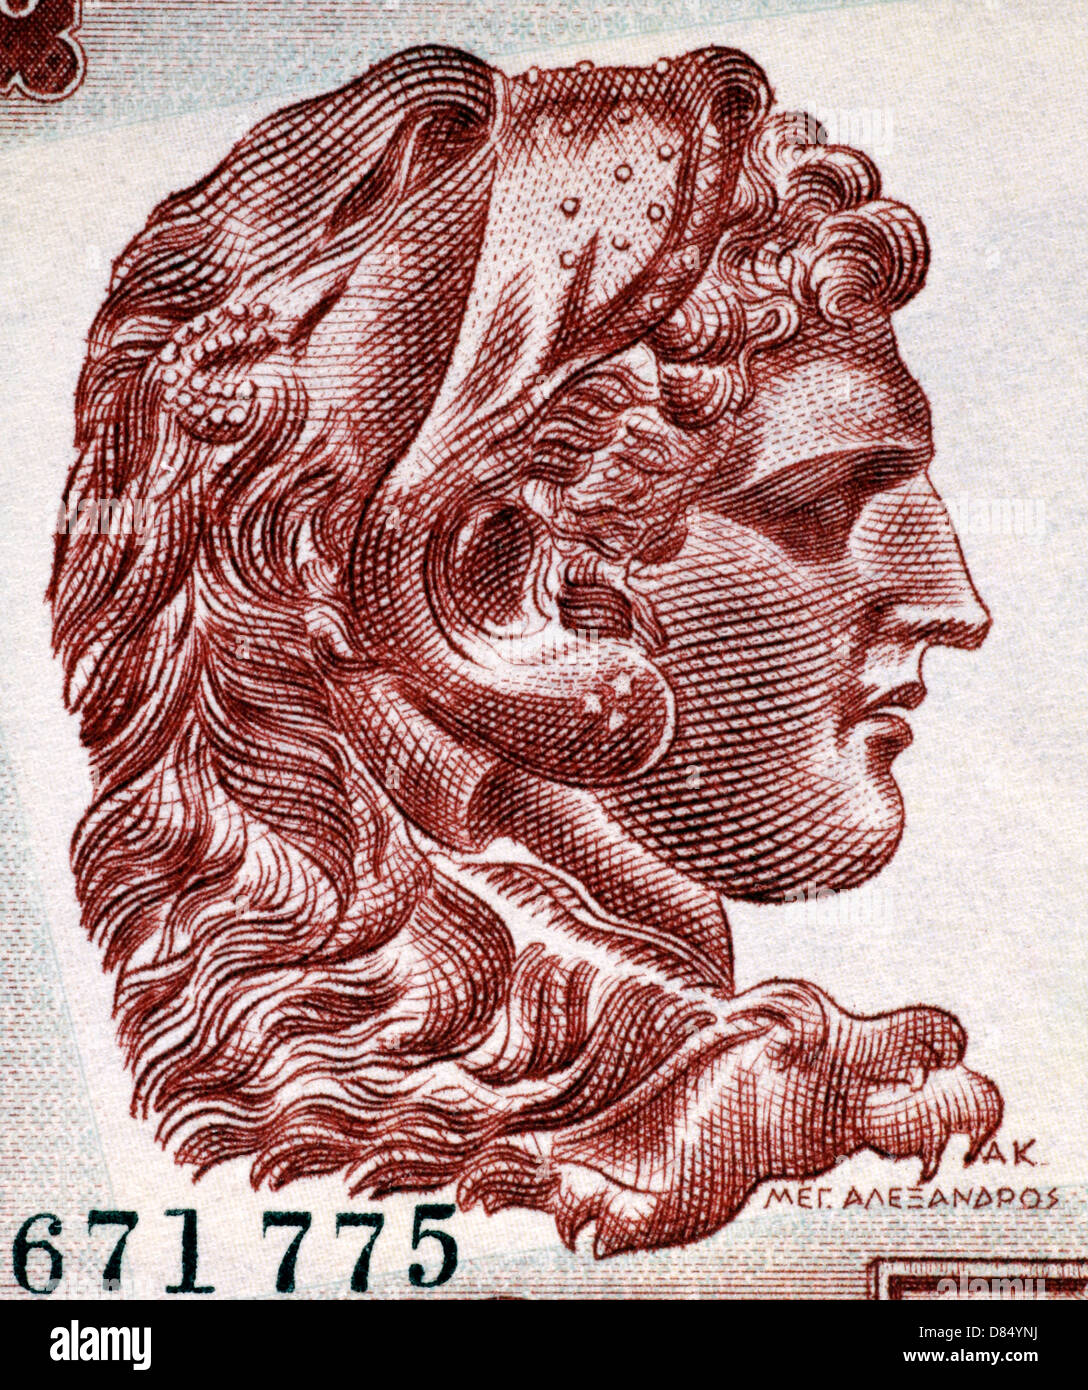 Alessandro il Grande (356-323BC) su 1000 Drachmai 1956 banconota dalla Grecia. Foto Stock